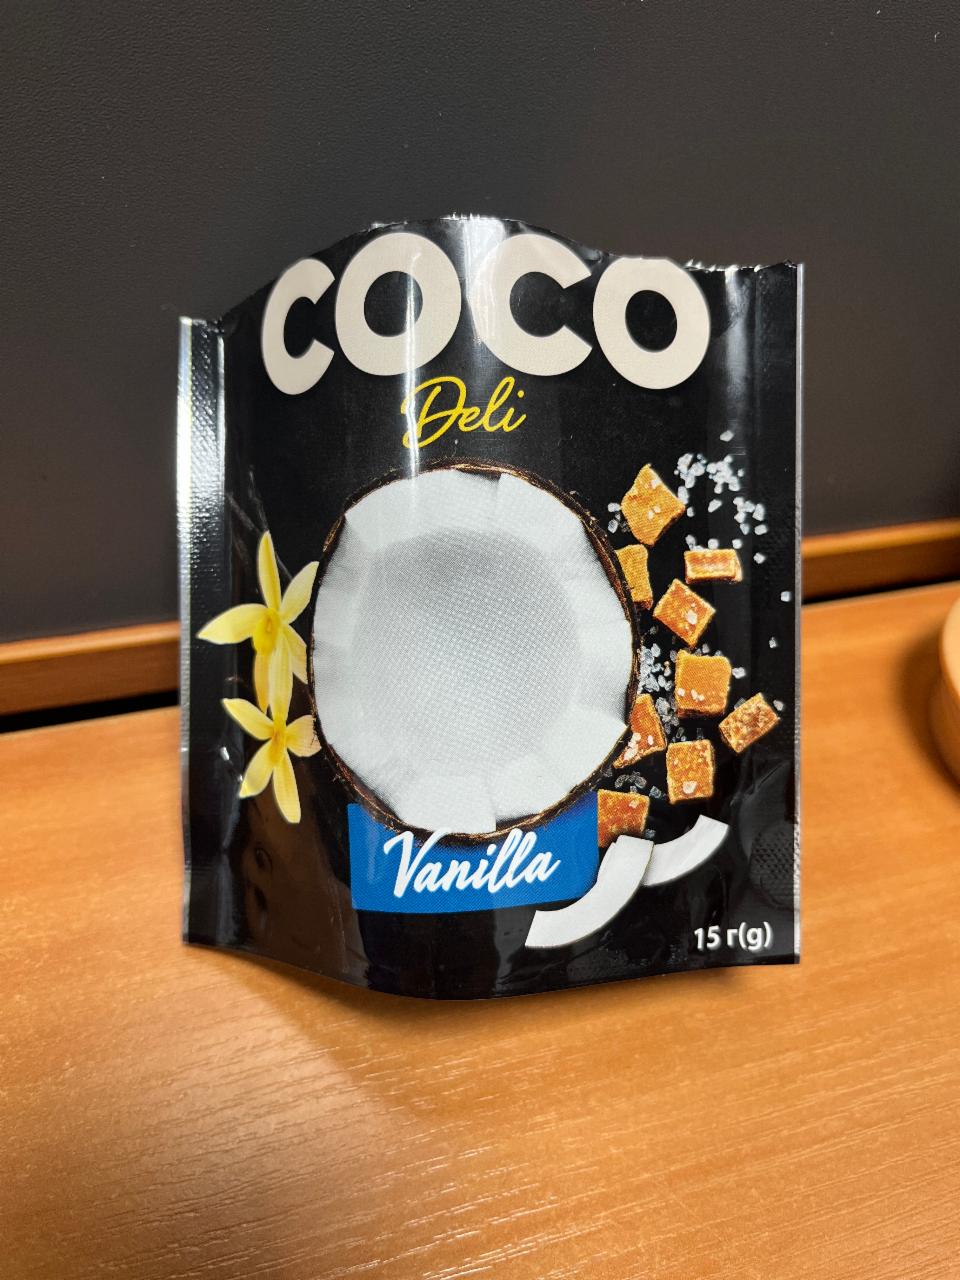 Фото - Чипсы кокосовые Vanill Coco Deli